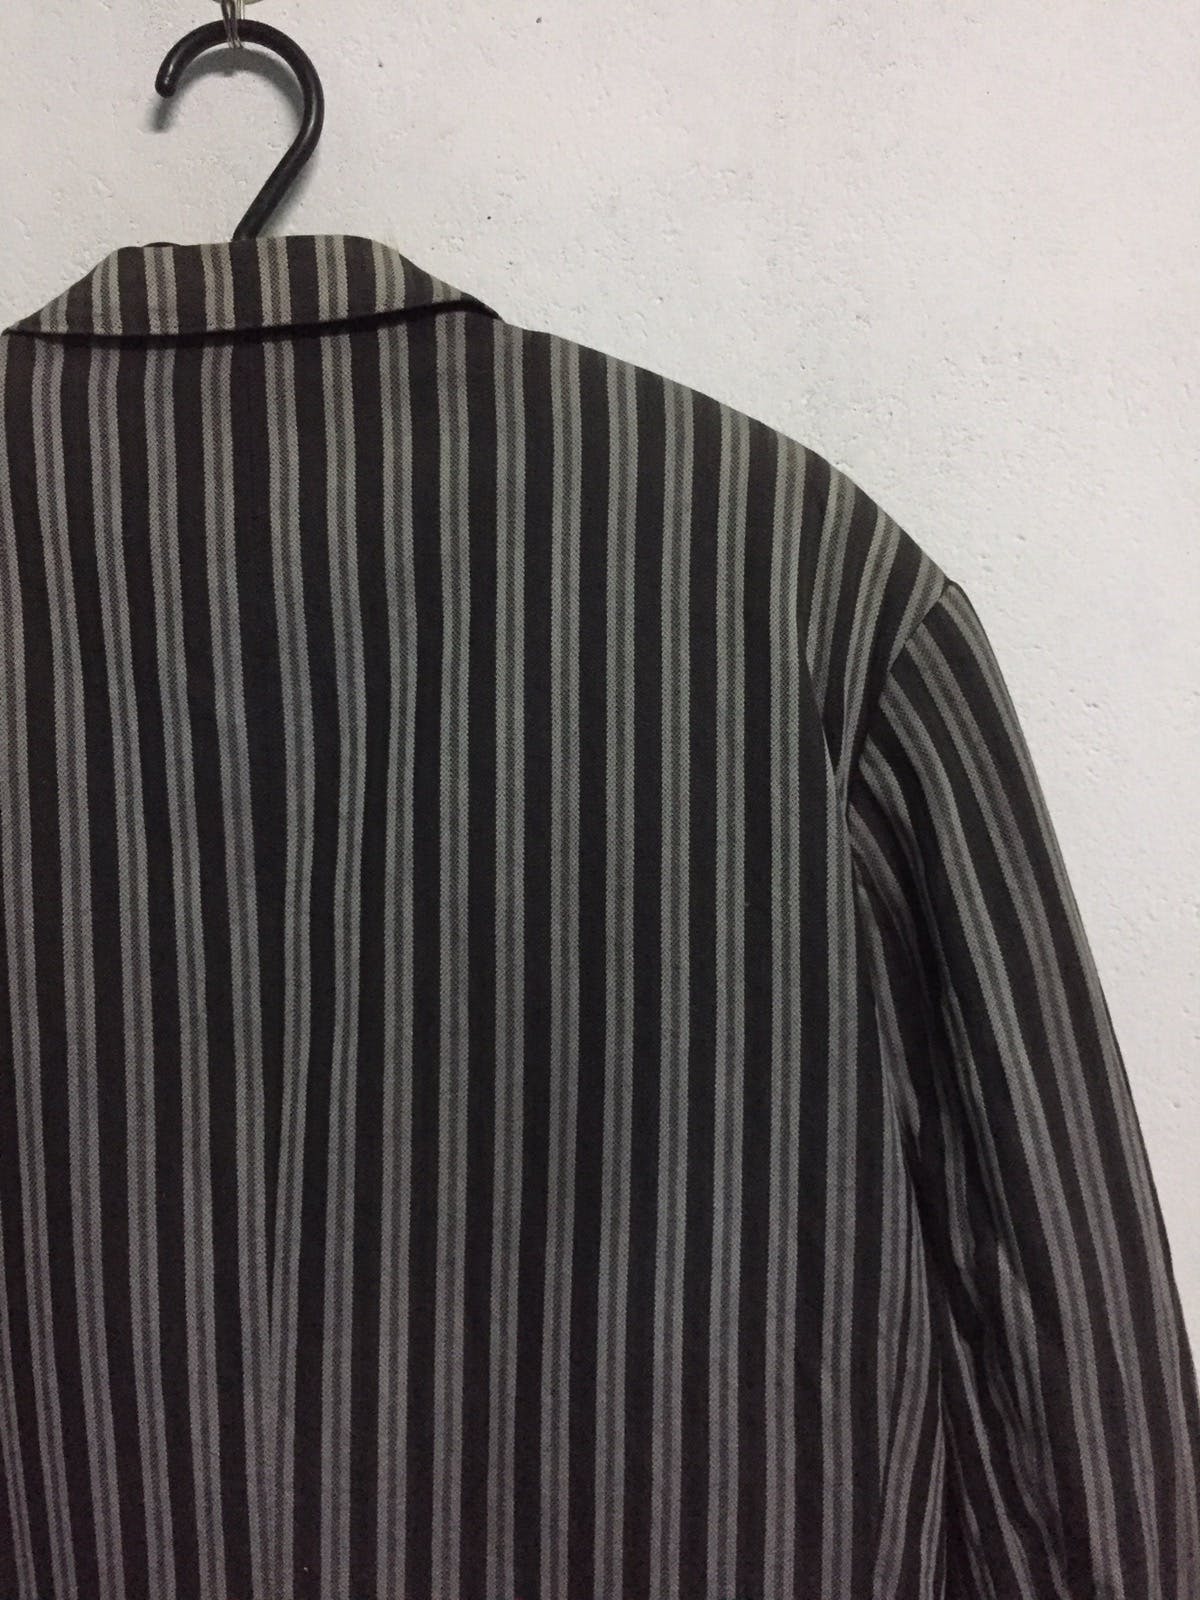 Kenzo Zebra Stripes Jacket Coat Made in Japan - 8